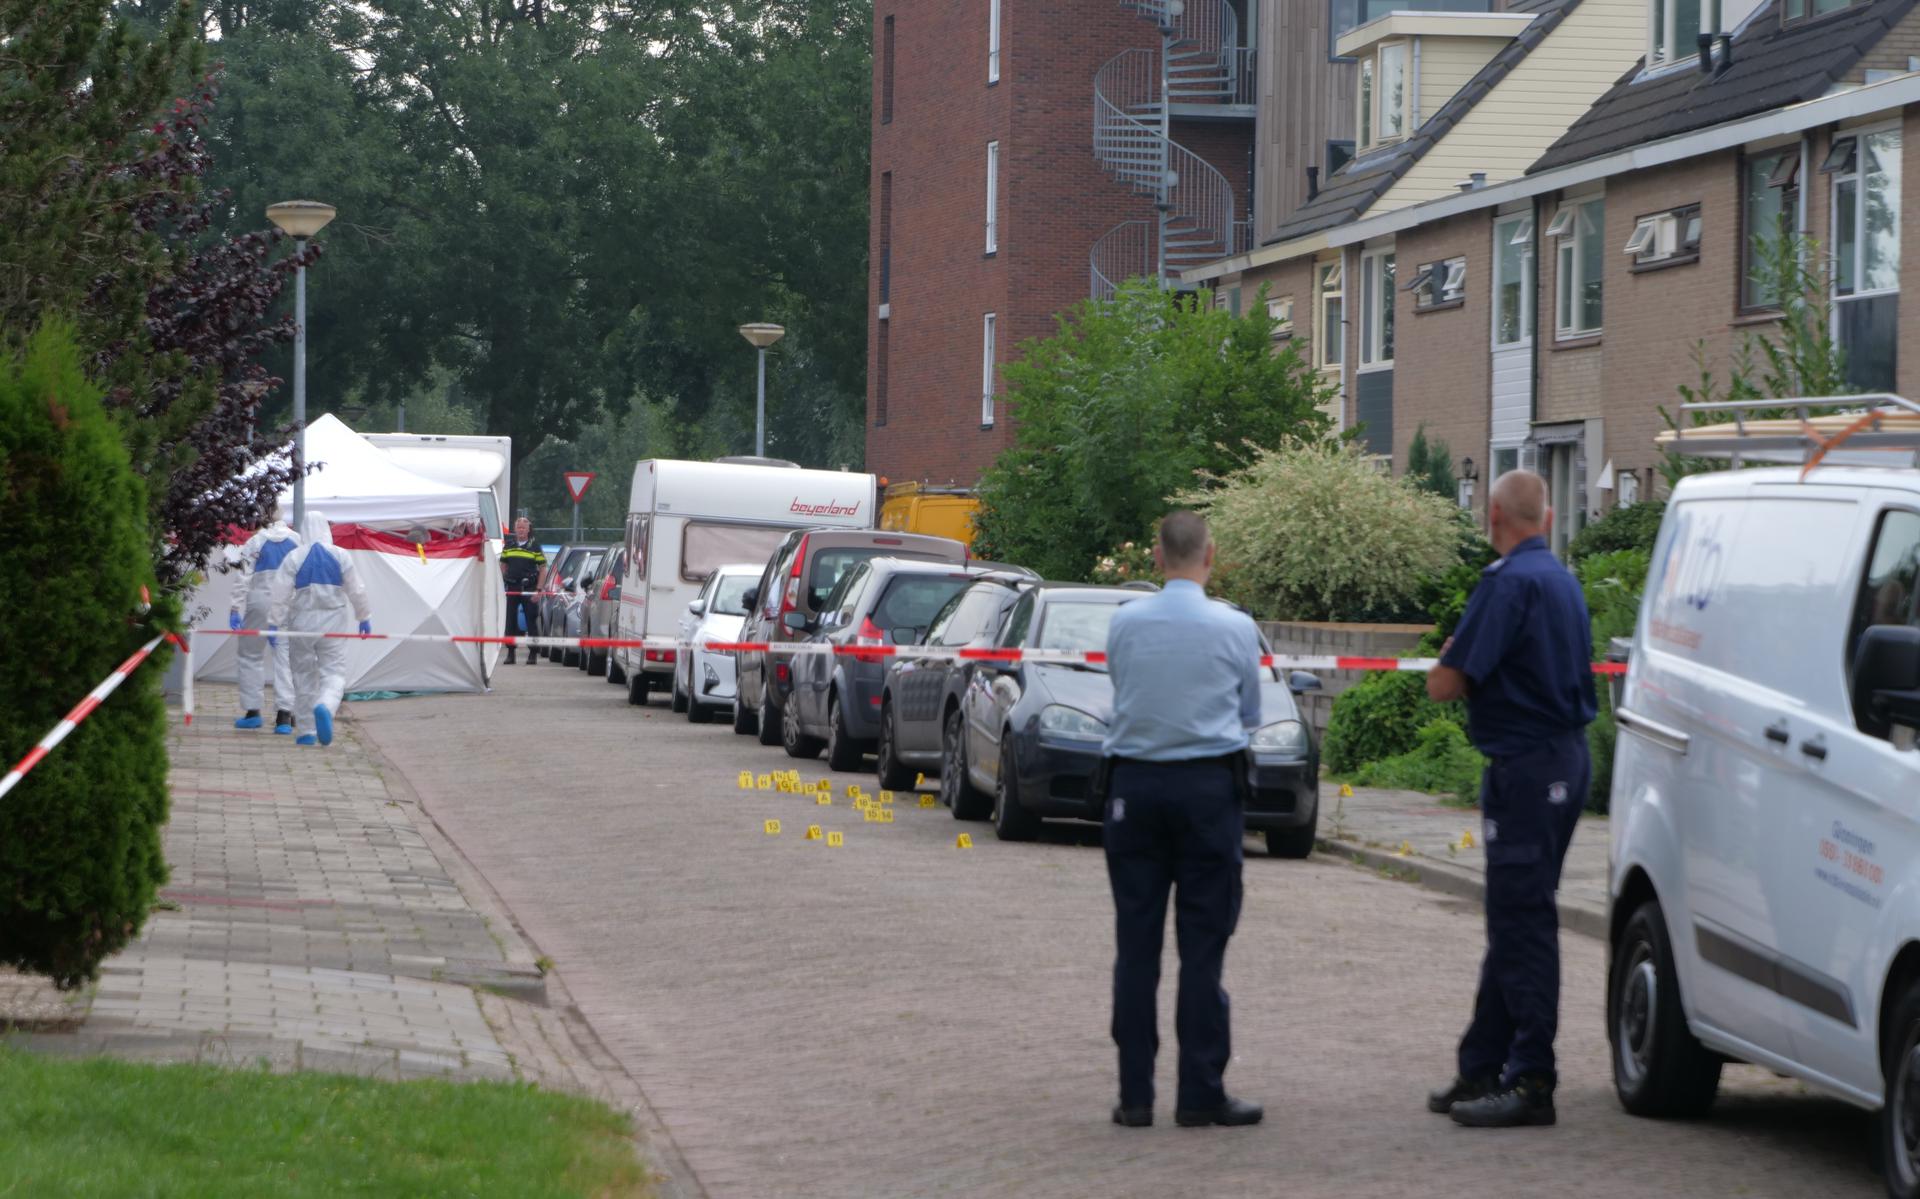 De J.A. de Bree-Meijerstraat in Hoogkerk, waar half augustus een geweldsincident plaatsvond.